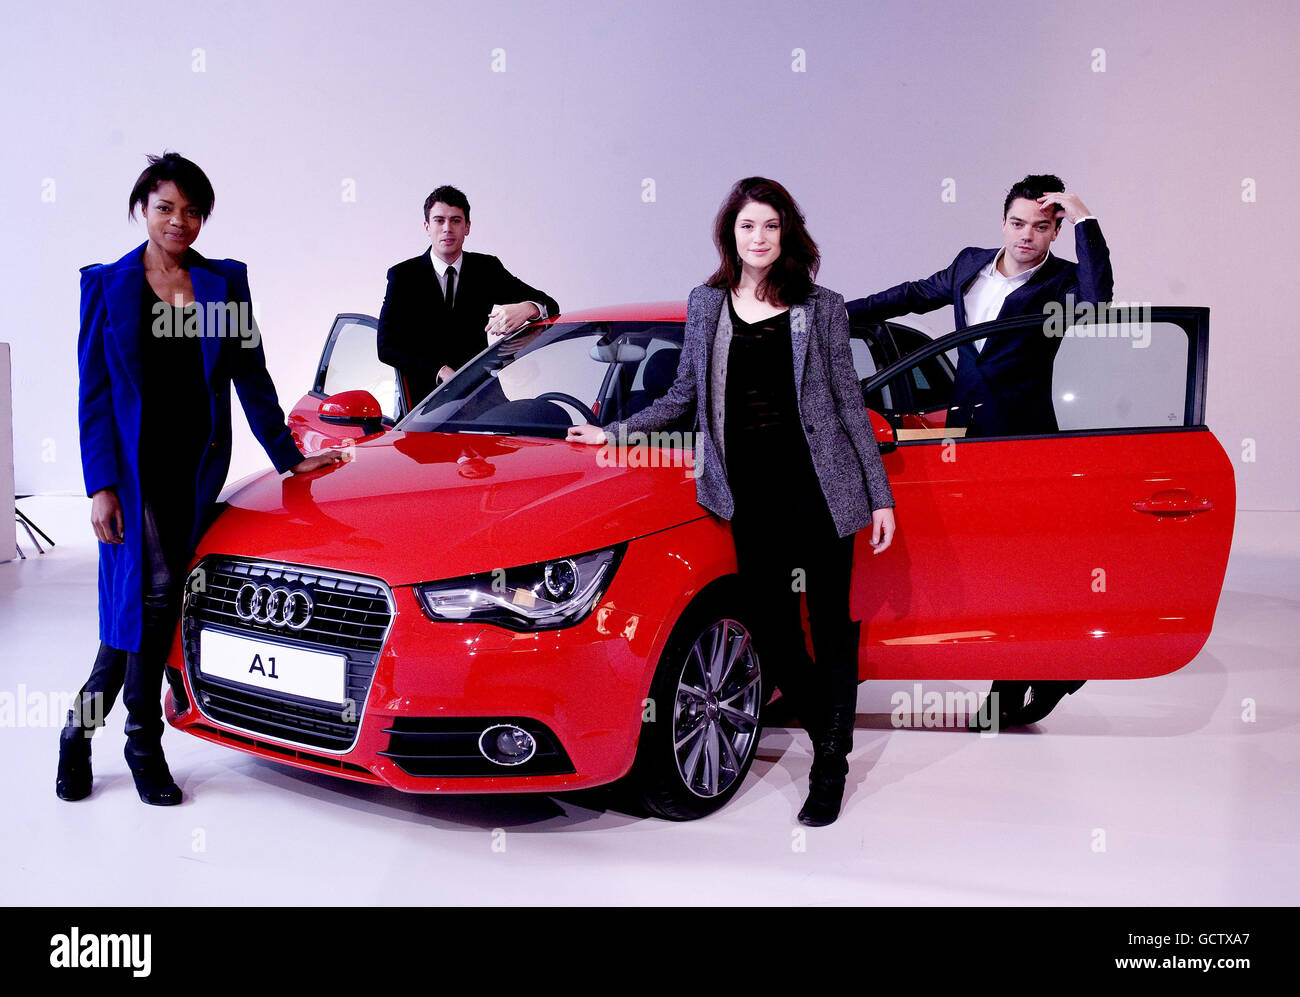 Naomie Harris, Toby Kebell, Gemma Arterton et Dominic Cooper sont vus lors du lancement de la nouvelle Audi A1 à Battersea à Londres. Banque D'Images